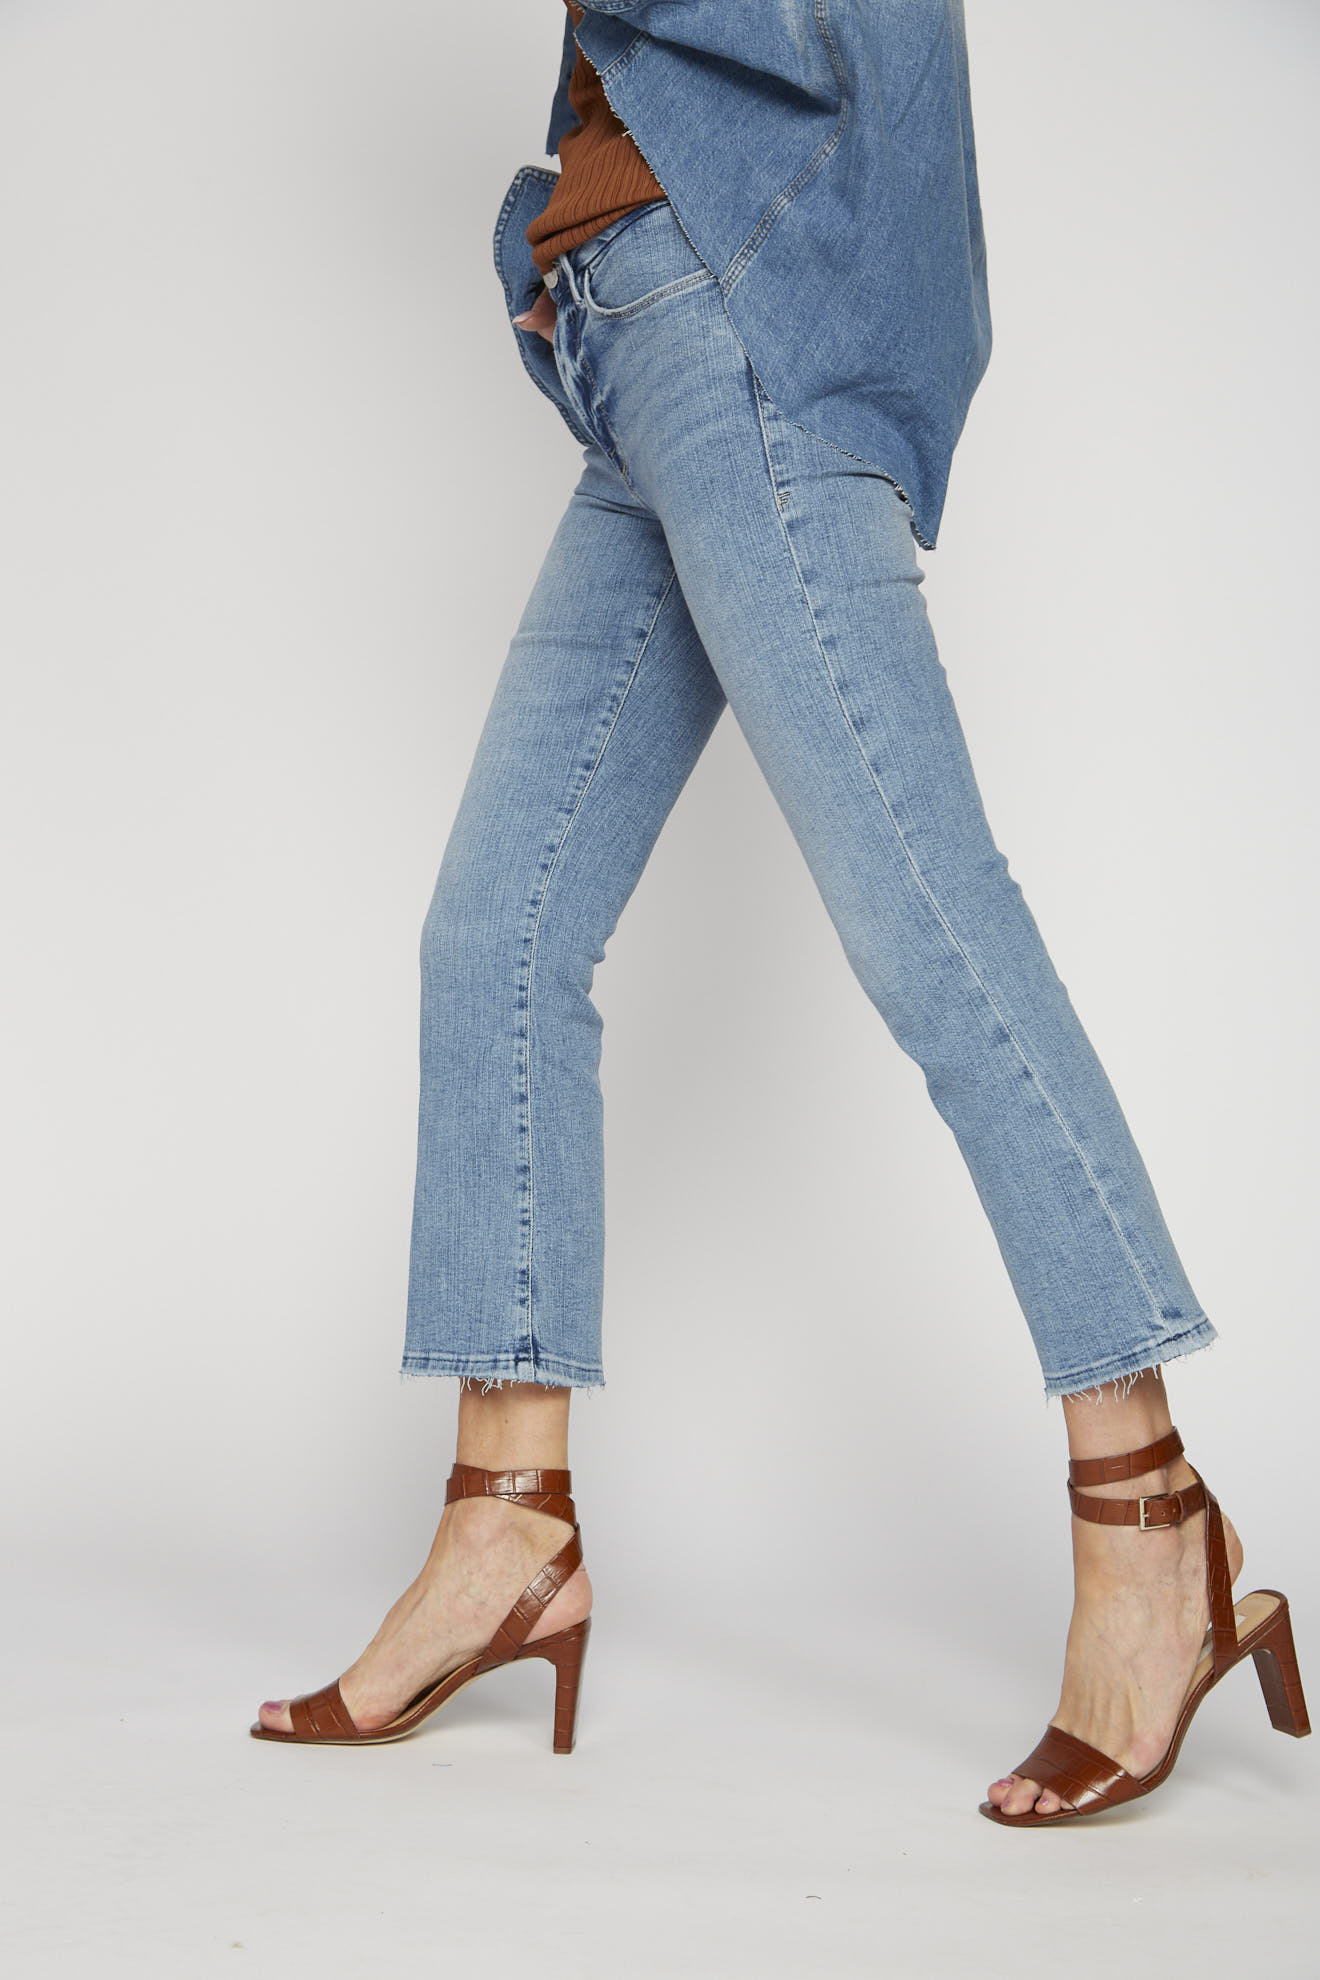 frame jeans denim einfarbig model seitenansicht